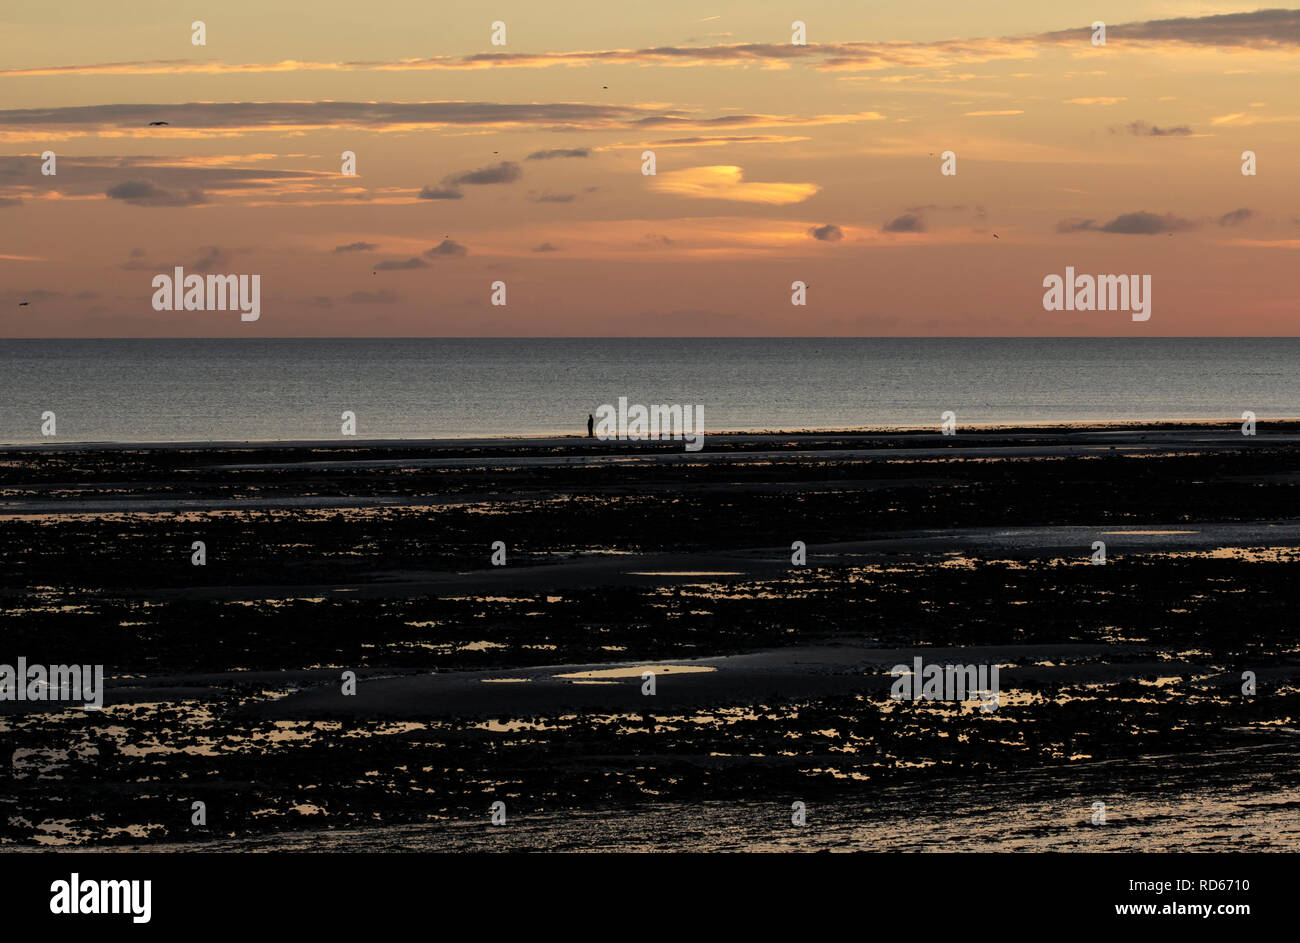 Personne seule en silhouette sur une plage au coucher du soleil Banque D'Images